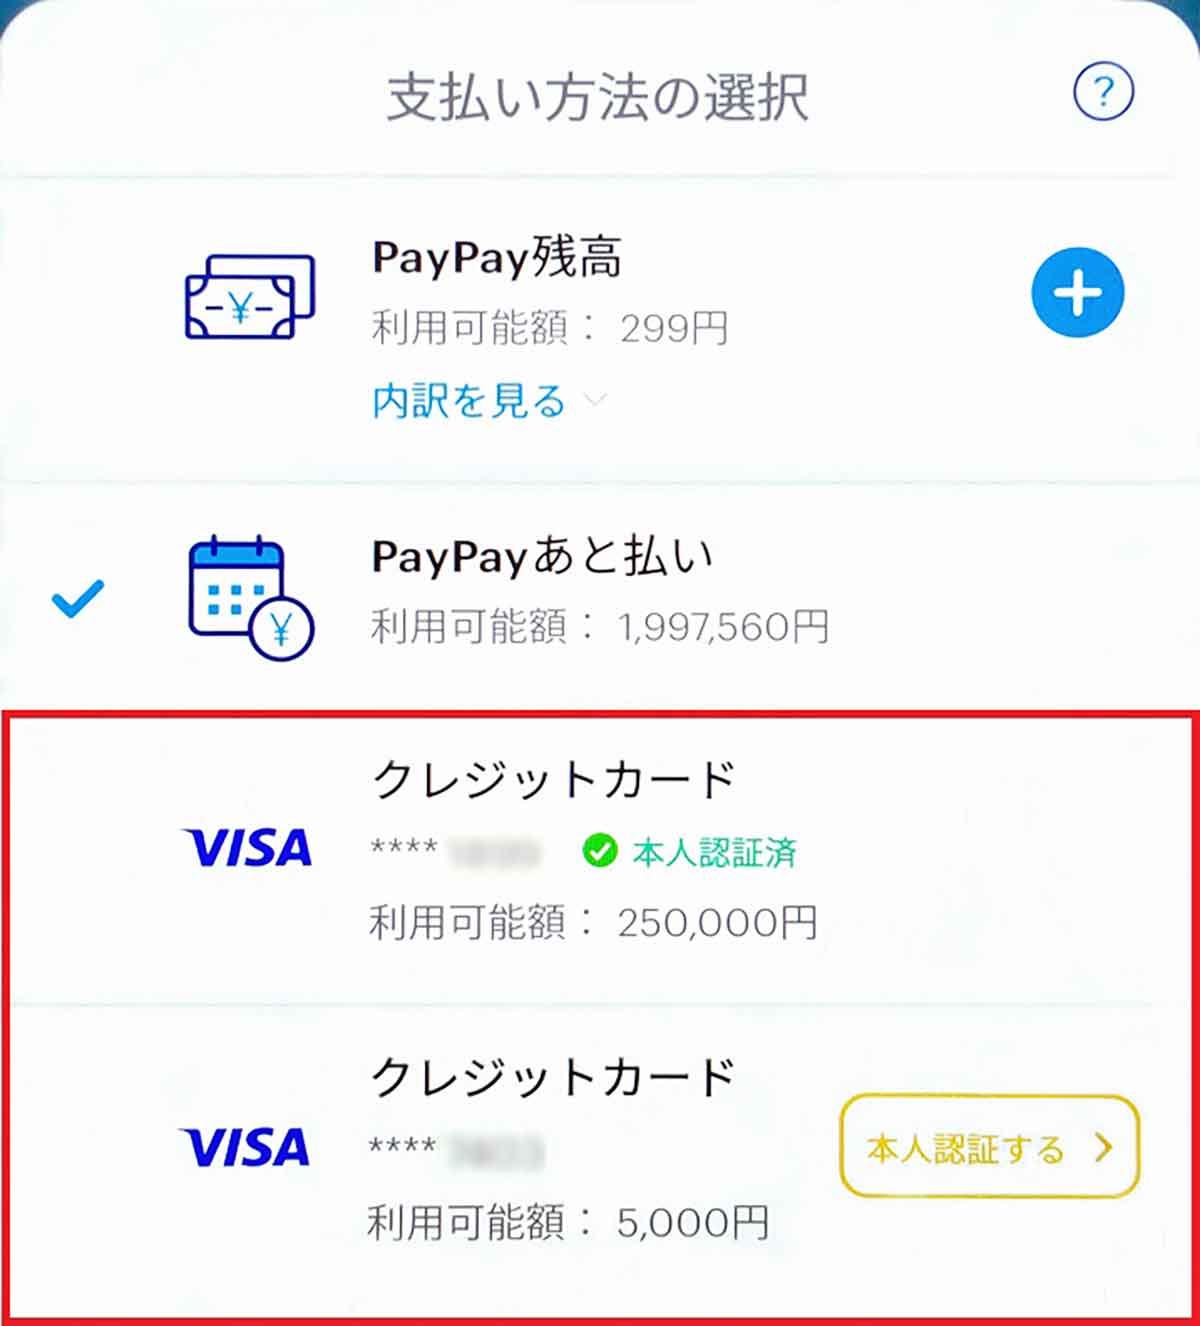 23年5月現在、PayPayでは「PayPay残高払い」「PayPayあと払い」のほか、他社クレカを登録してクレカ払いすることが可能